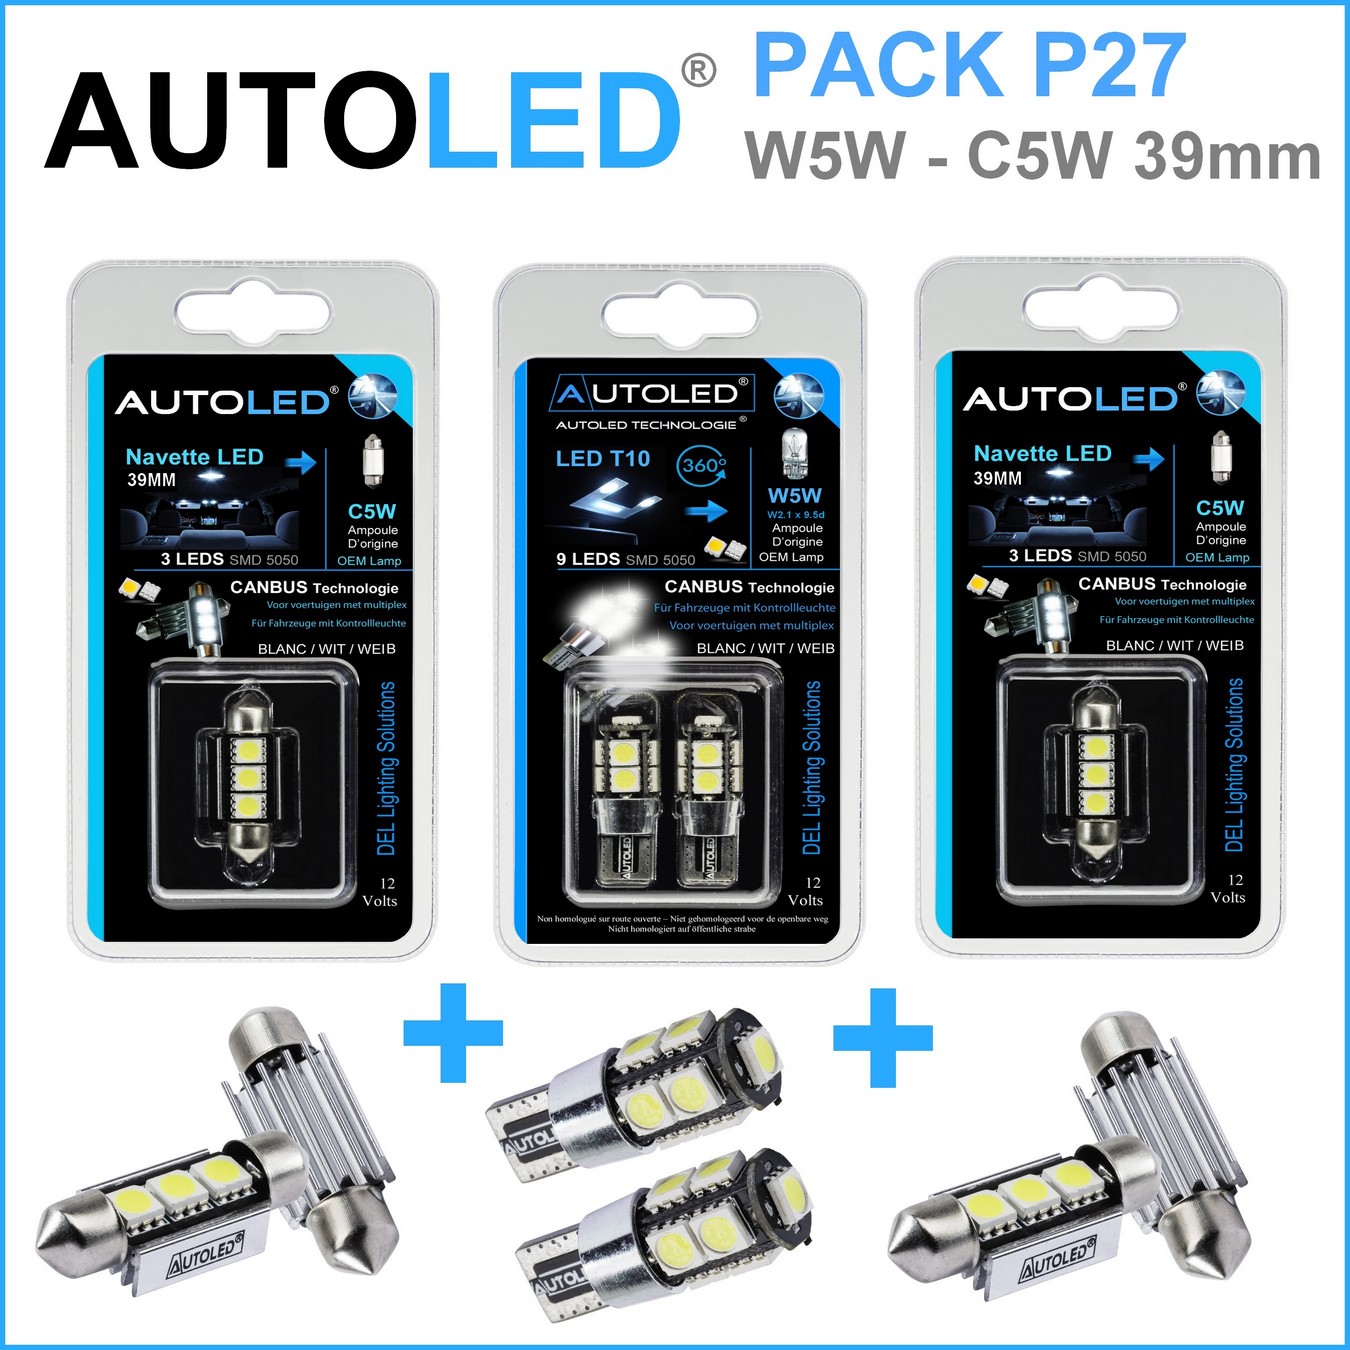 Pack-4-ampoules-led-canbus-blanc-habitacle-plafonnier-feux-de position-coffre-w5w-t10-9leds-smd-5050-canbus-navette-39mm-c5w-c10w-3leds-blanc-eclairage-led-autoled-pack-p27.2